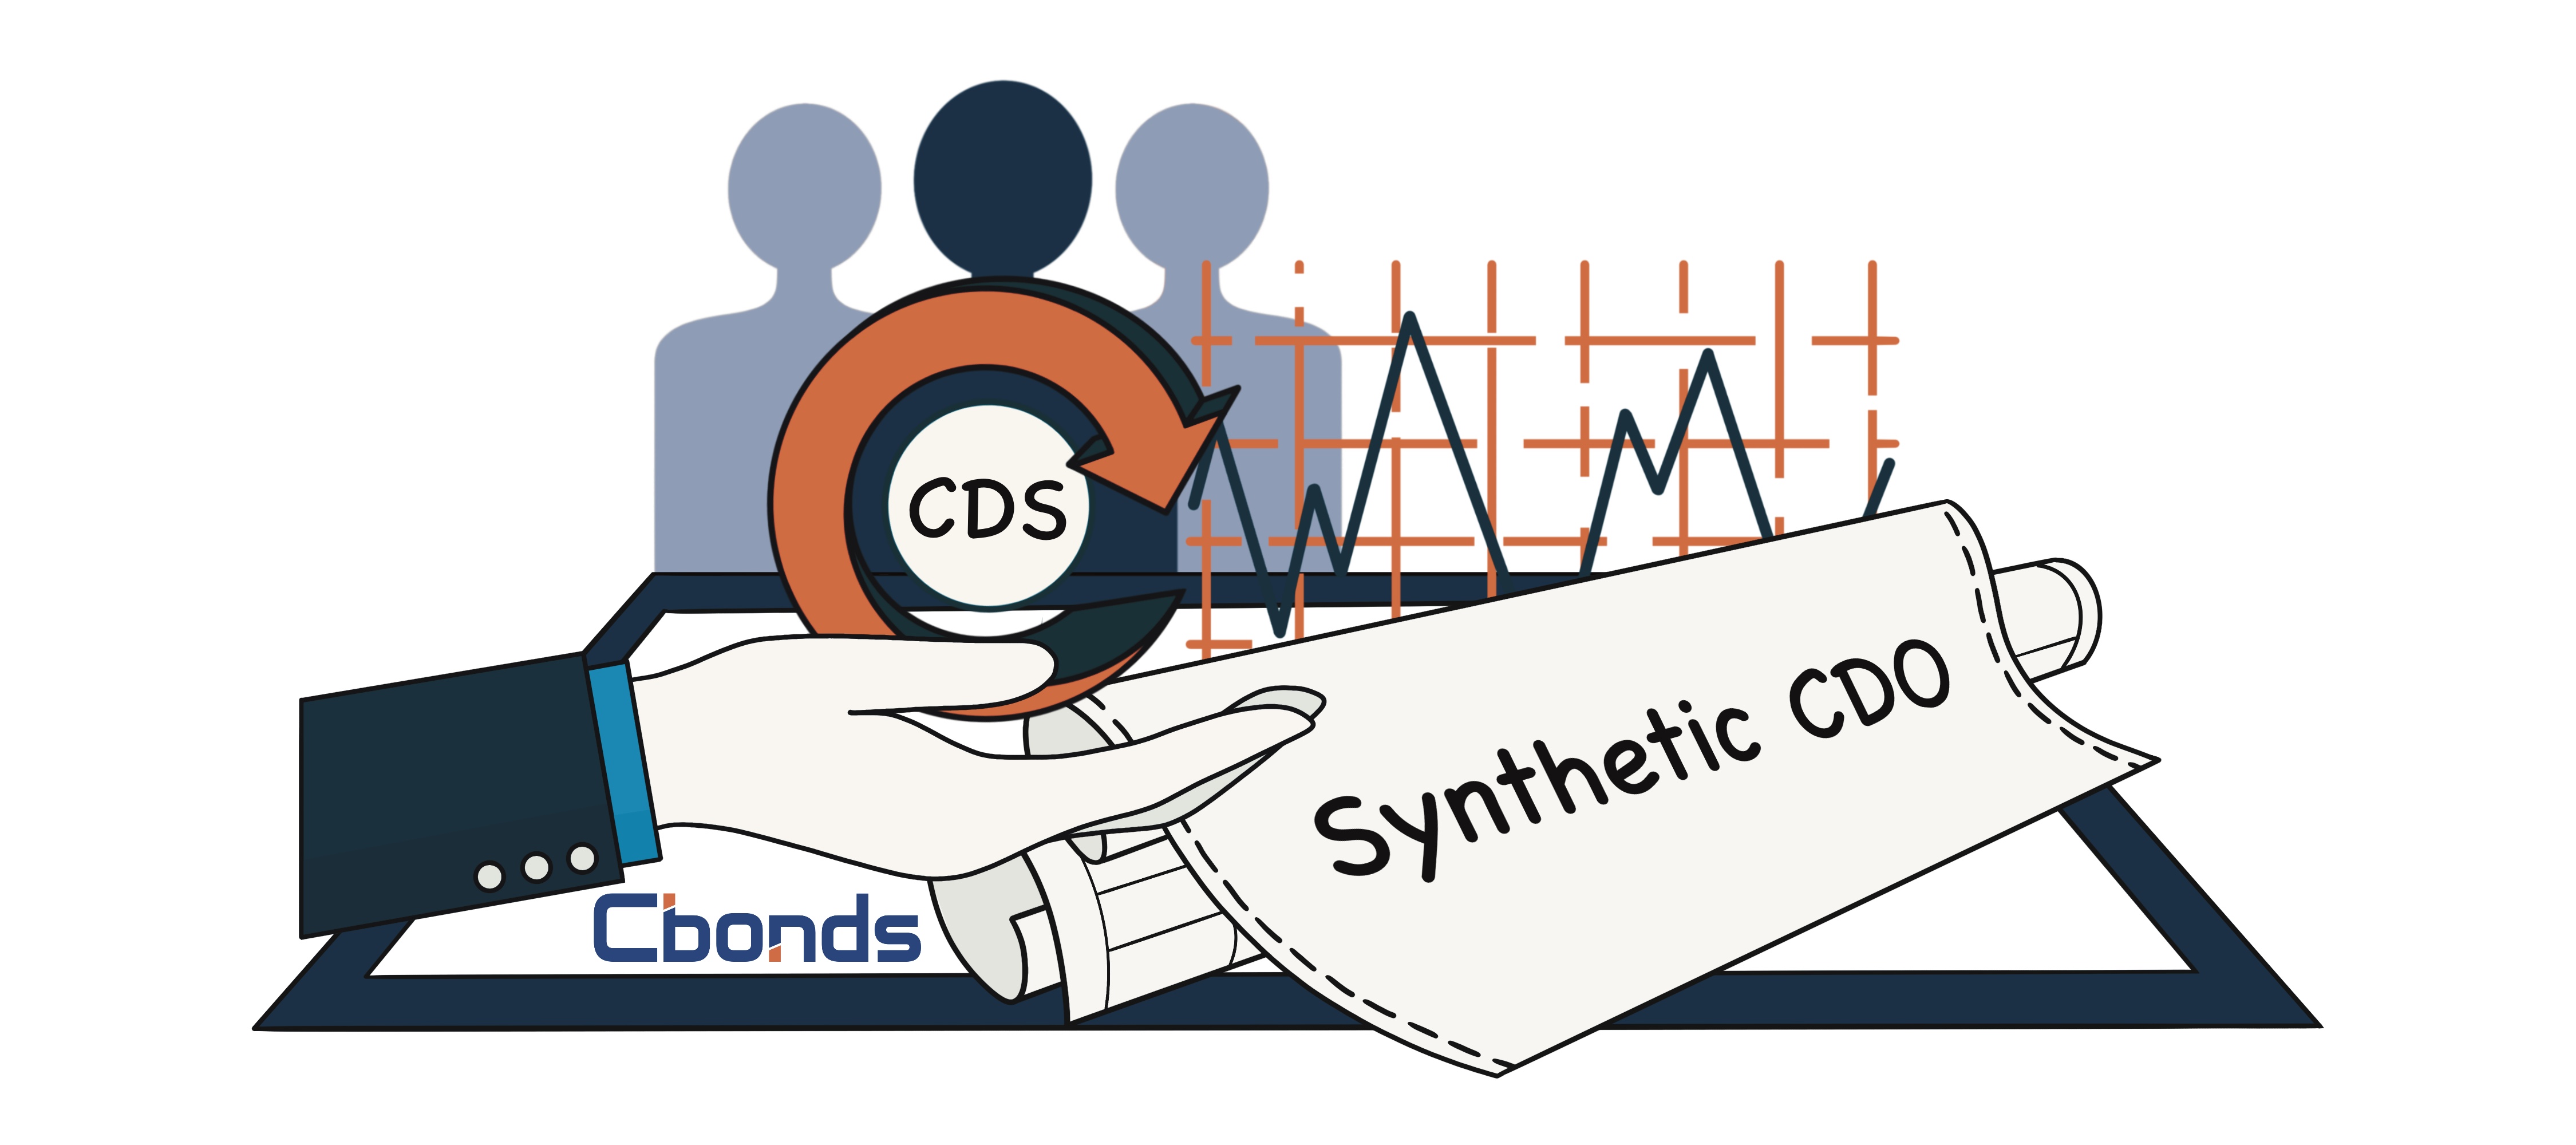 Synthetic CDO